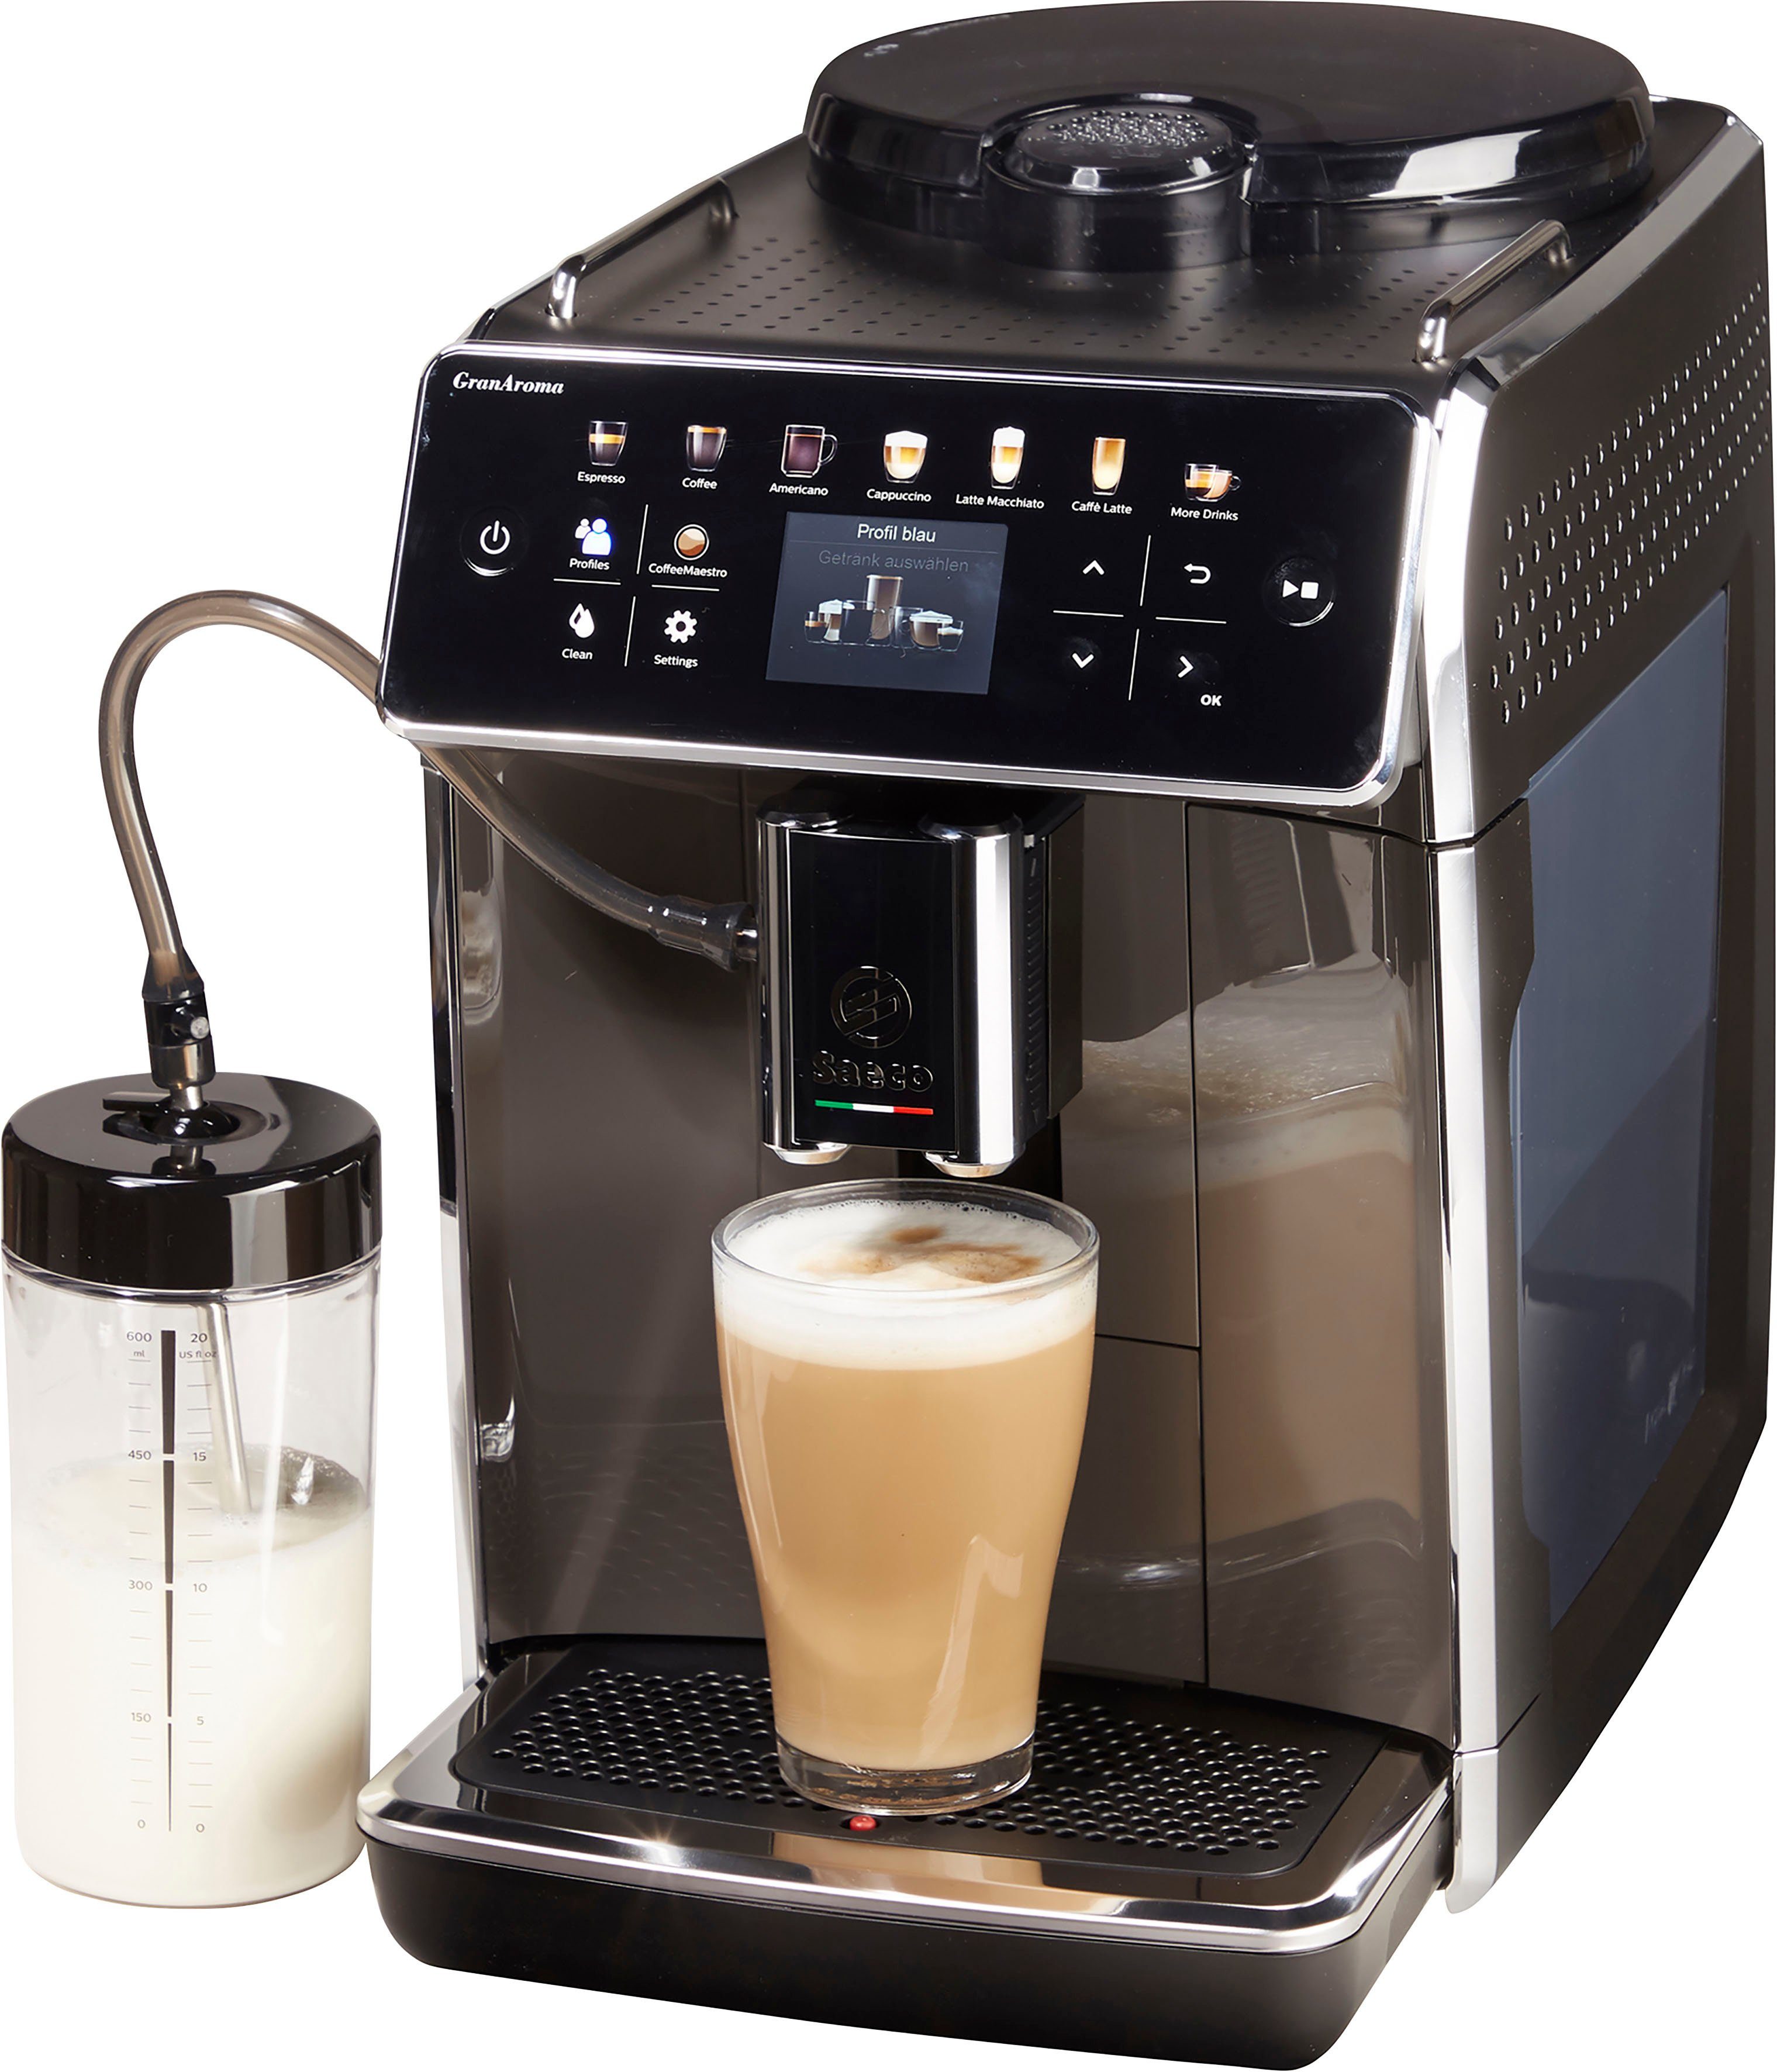 TFT mit SM6580/50, und Kaffeevollautomat für GranAroma 14 Benutzerprofilen 4 Saeco Kaffeespezialitäten, Display